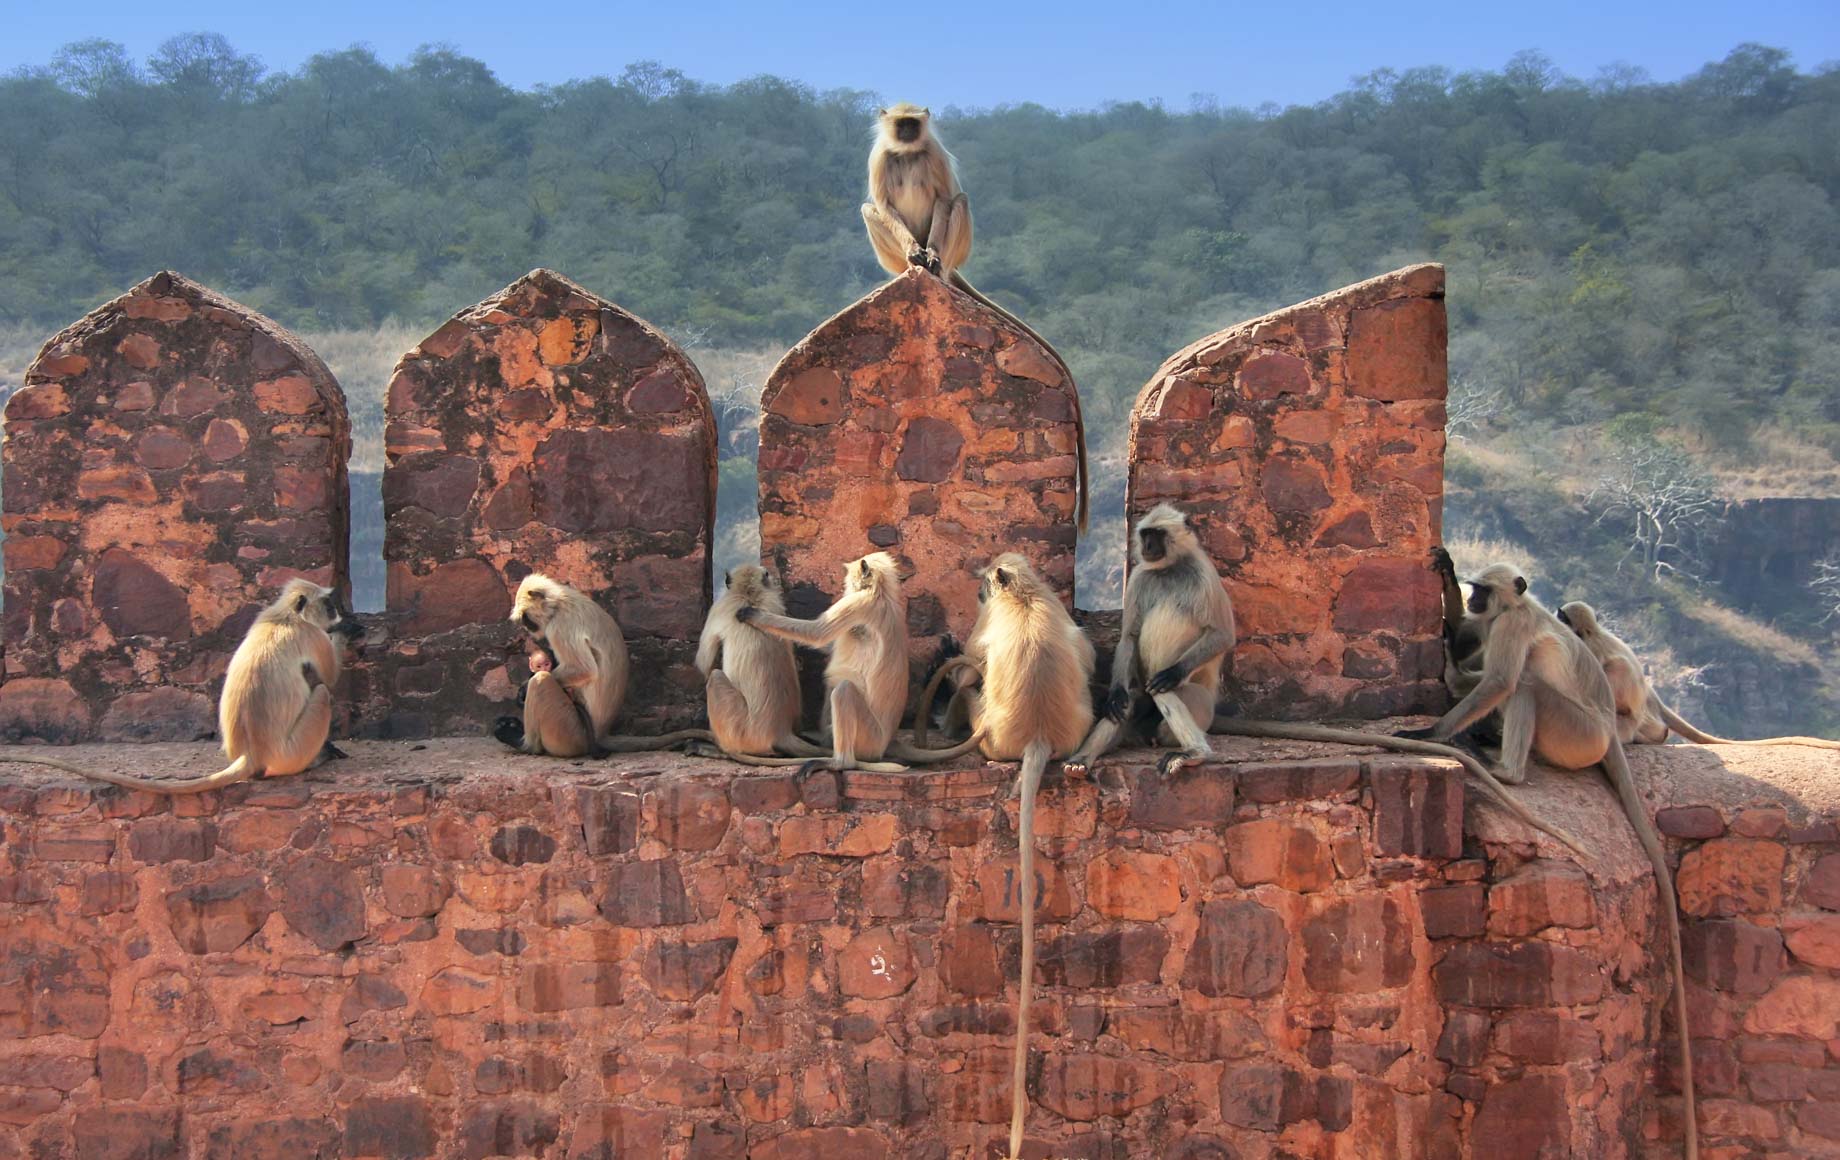 Monkeys in Ranthambore